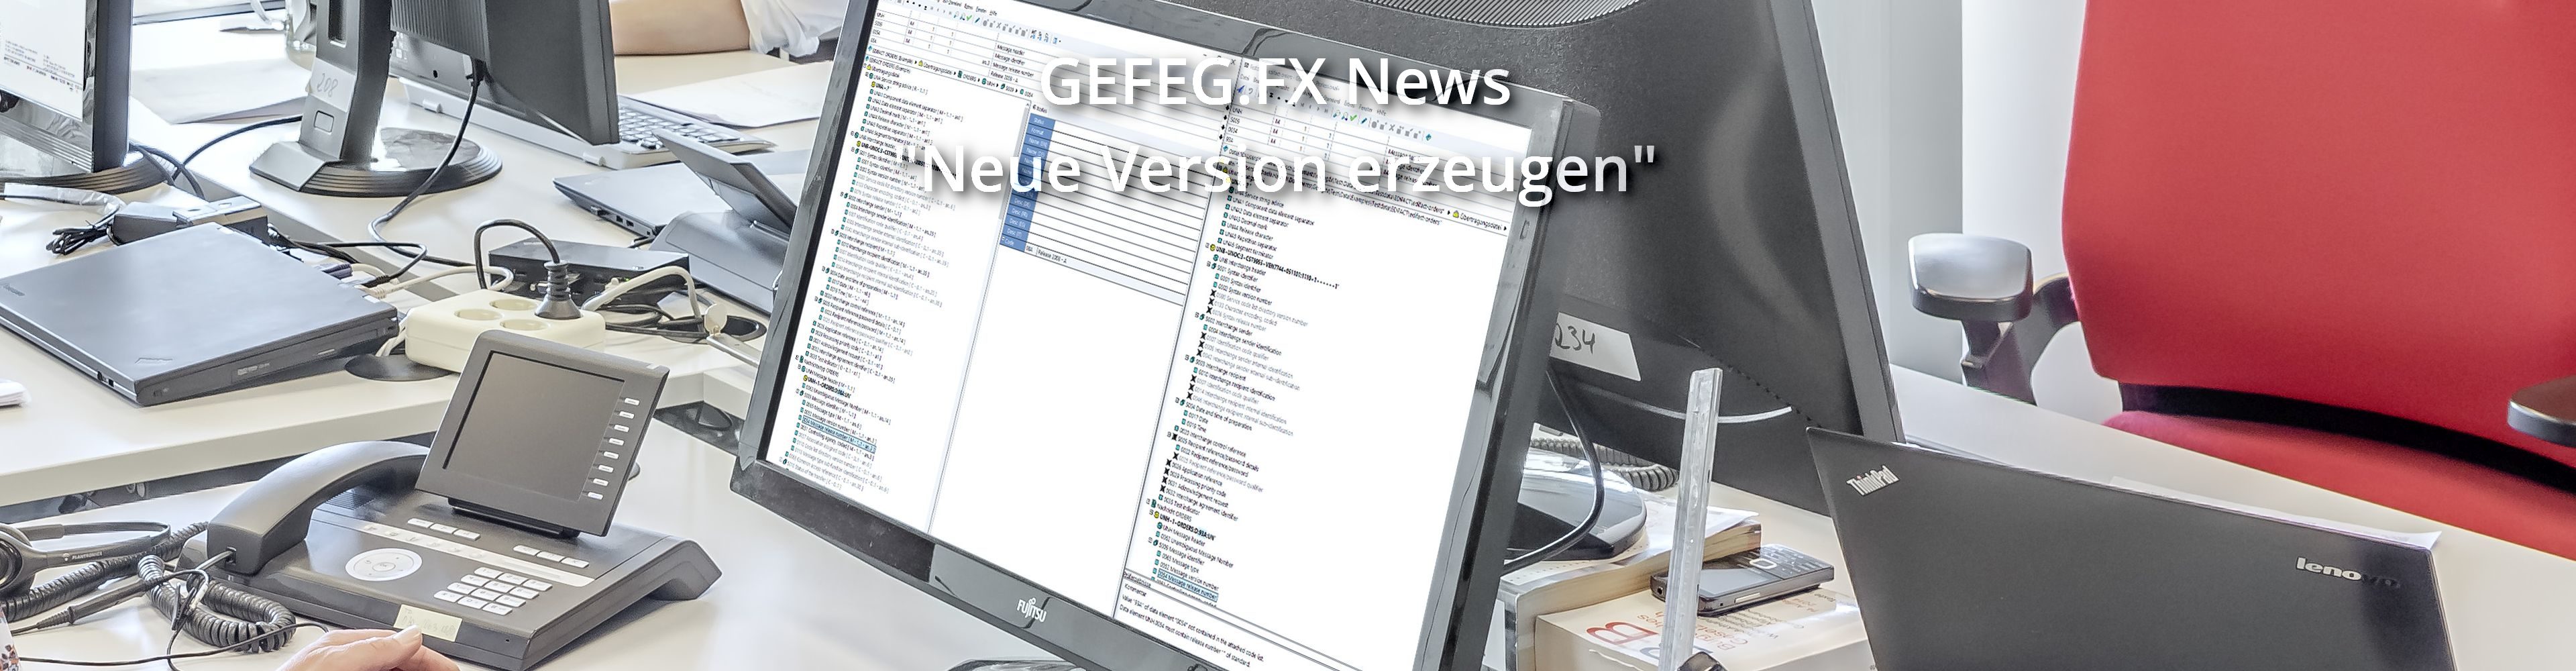 GEFEG.FX News - Neue Version erzeugen